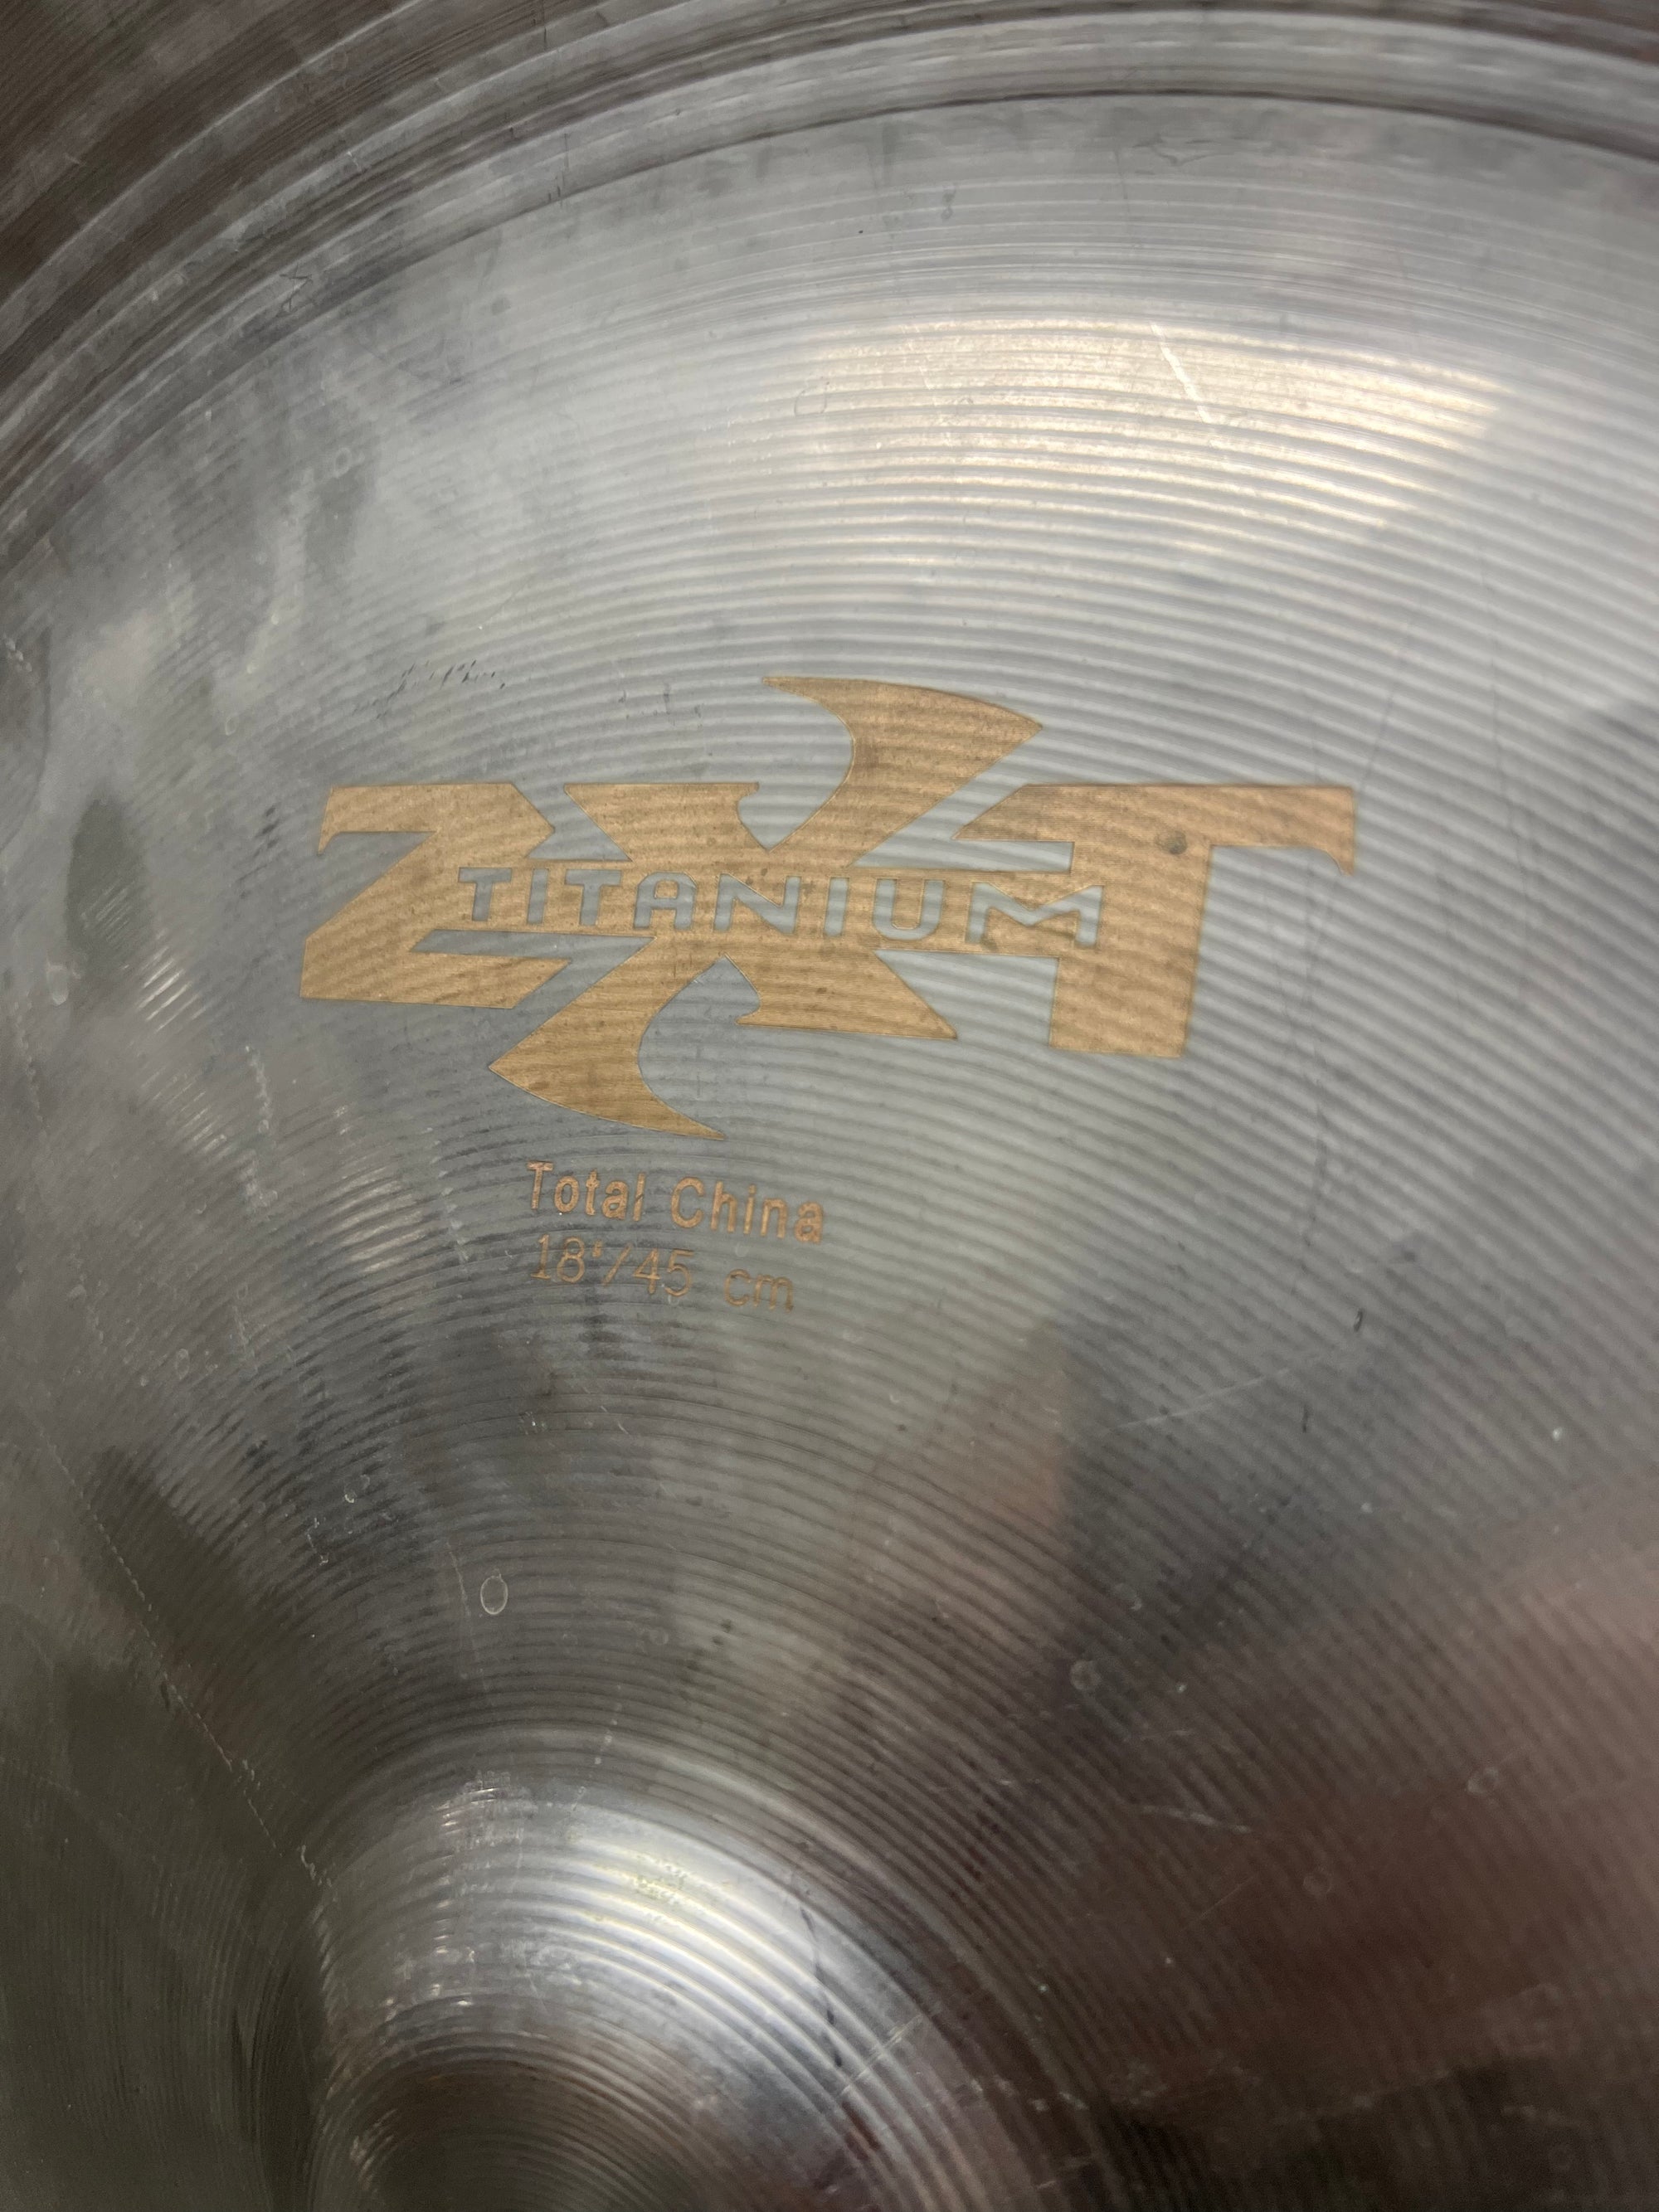 Zildjian 18” ZXT Total China Cymbal